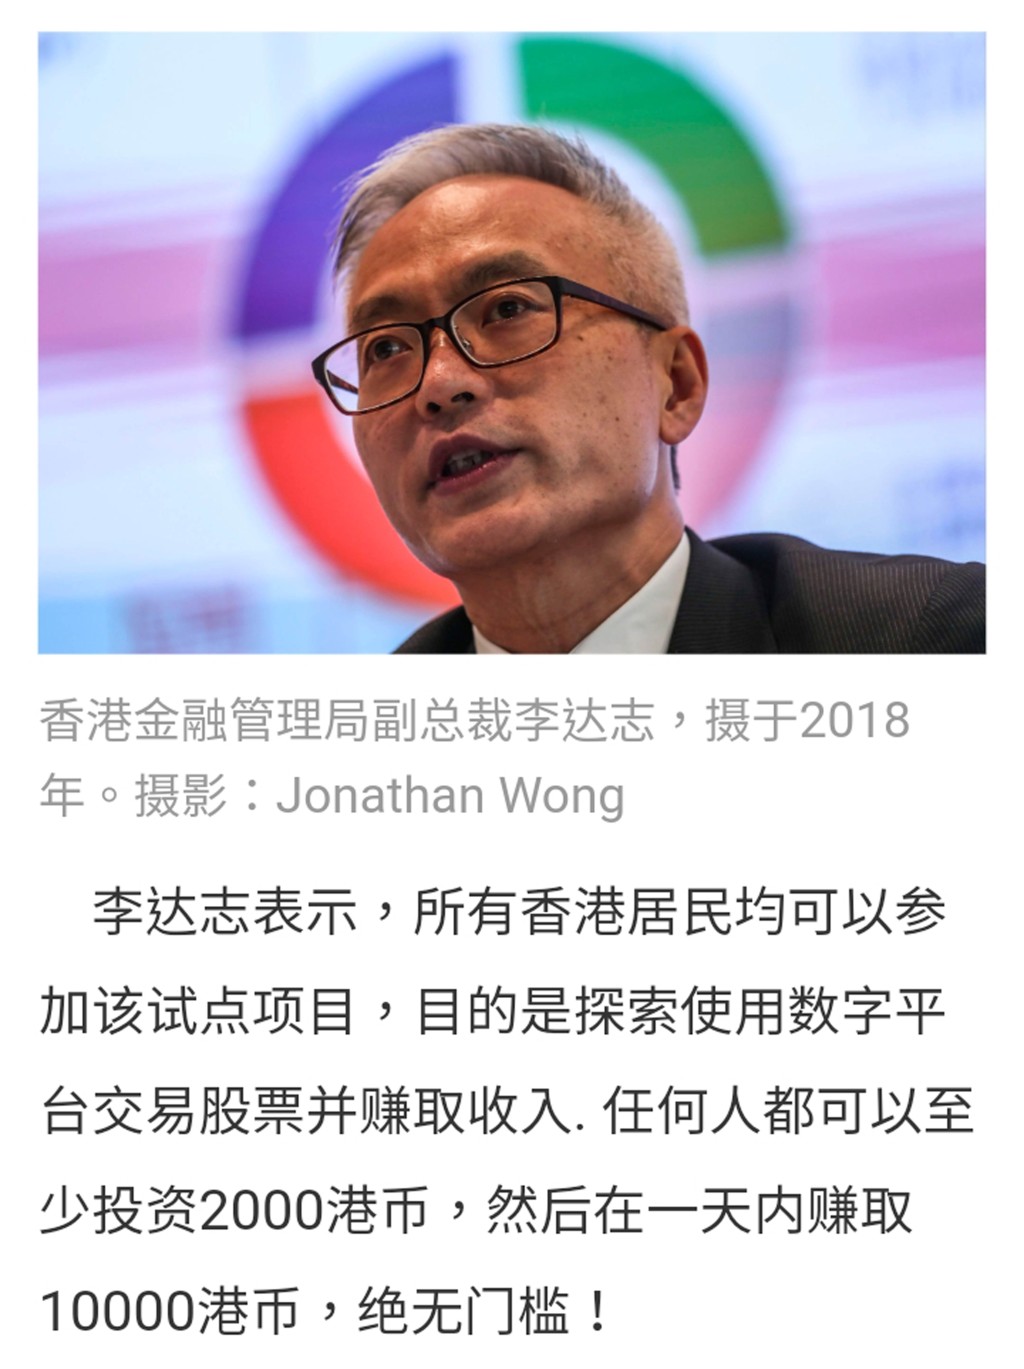 詐騙廣告杜撰香港金融管理局副總裁李達志的言論引誘市民投資。 網上圖片